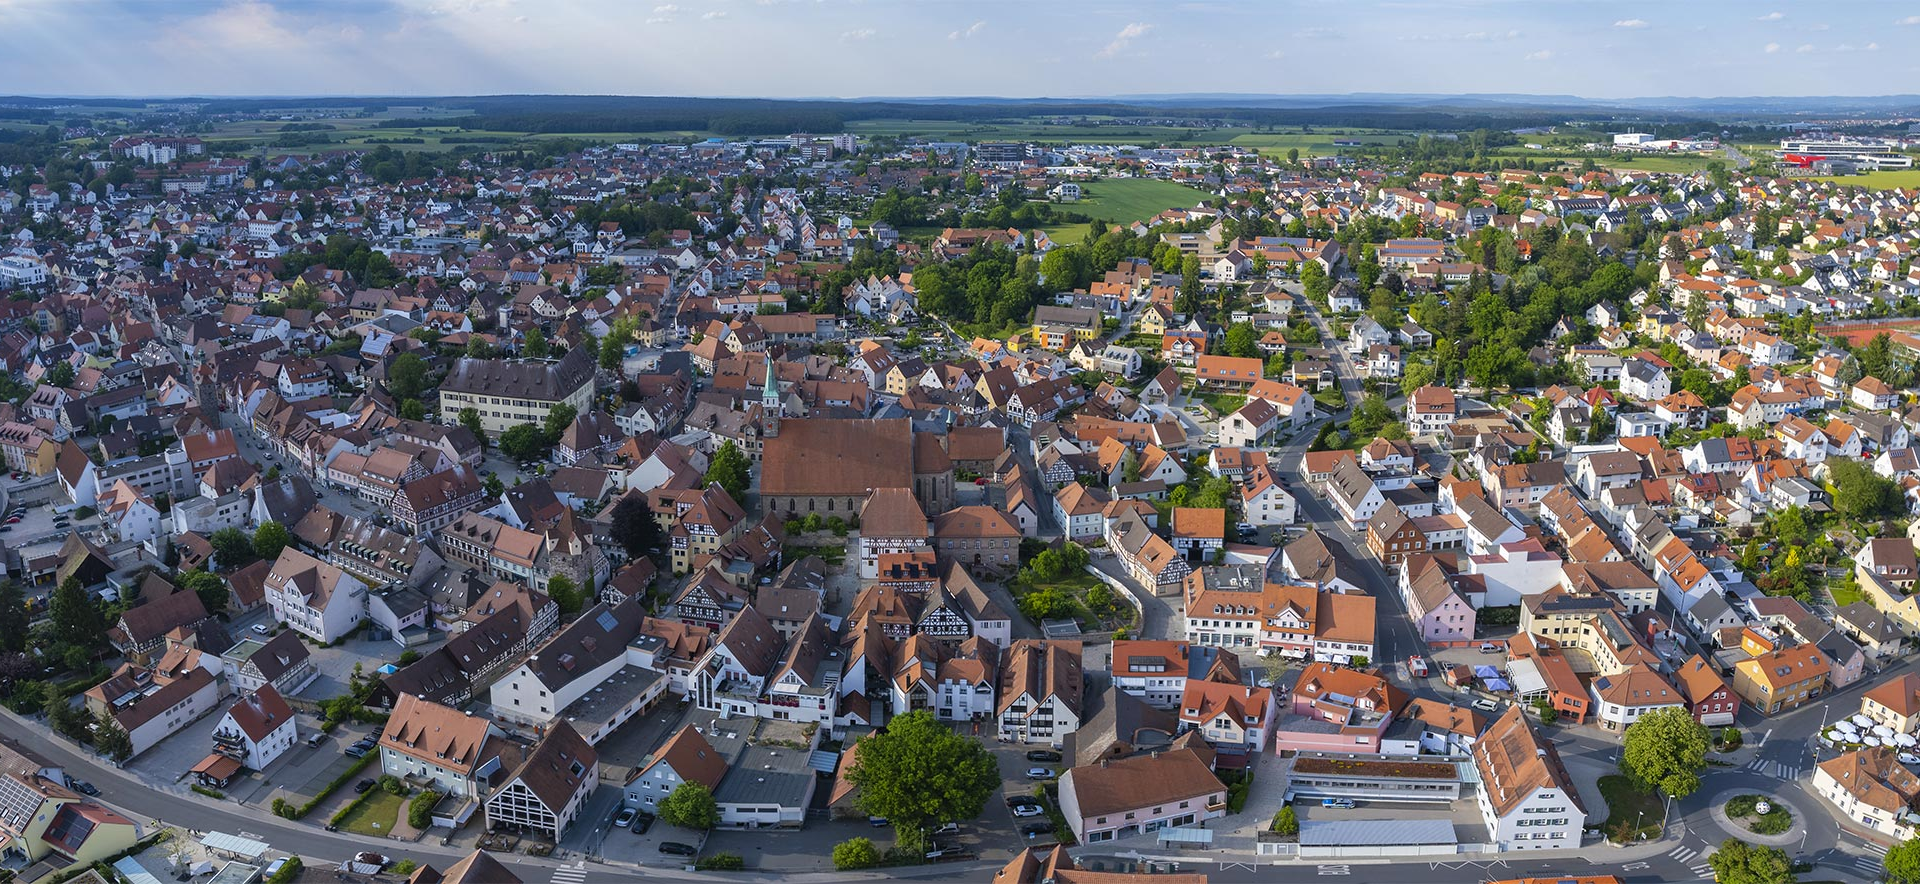 Immobilienexperten und Immobilienmakler in Herzogenaurach